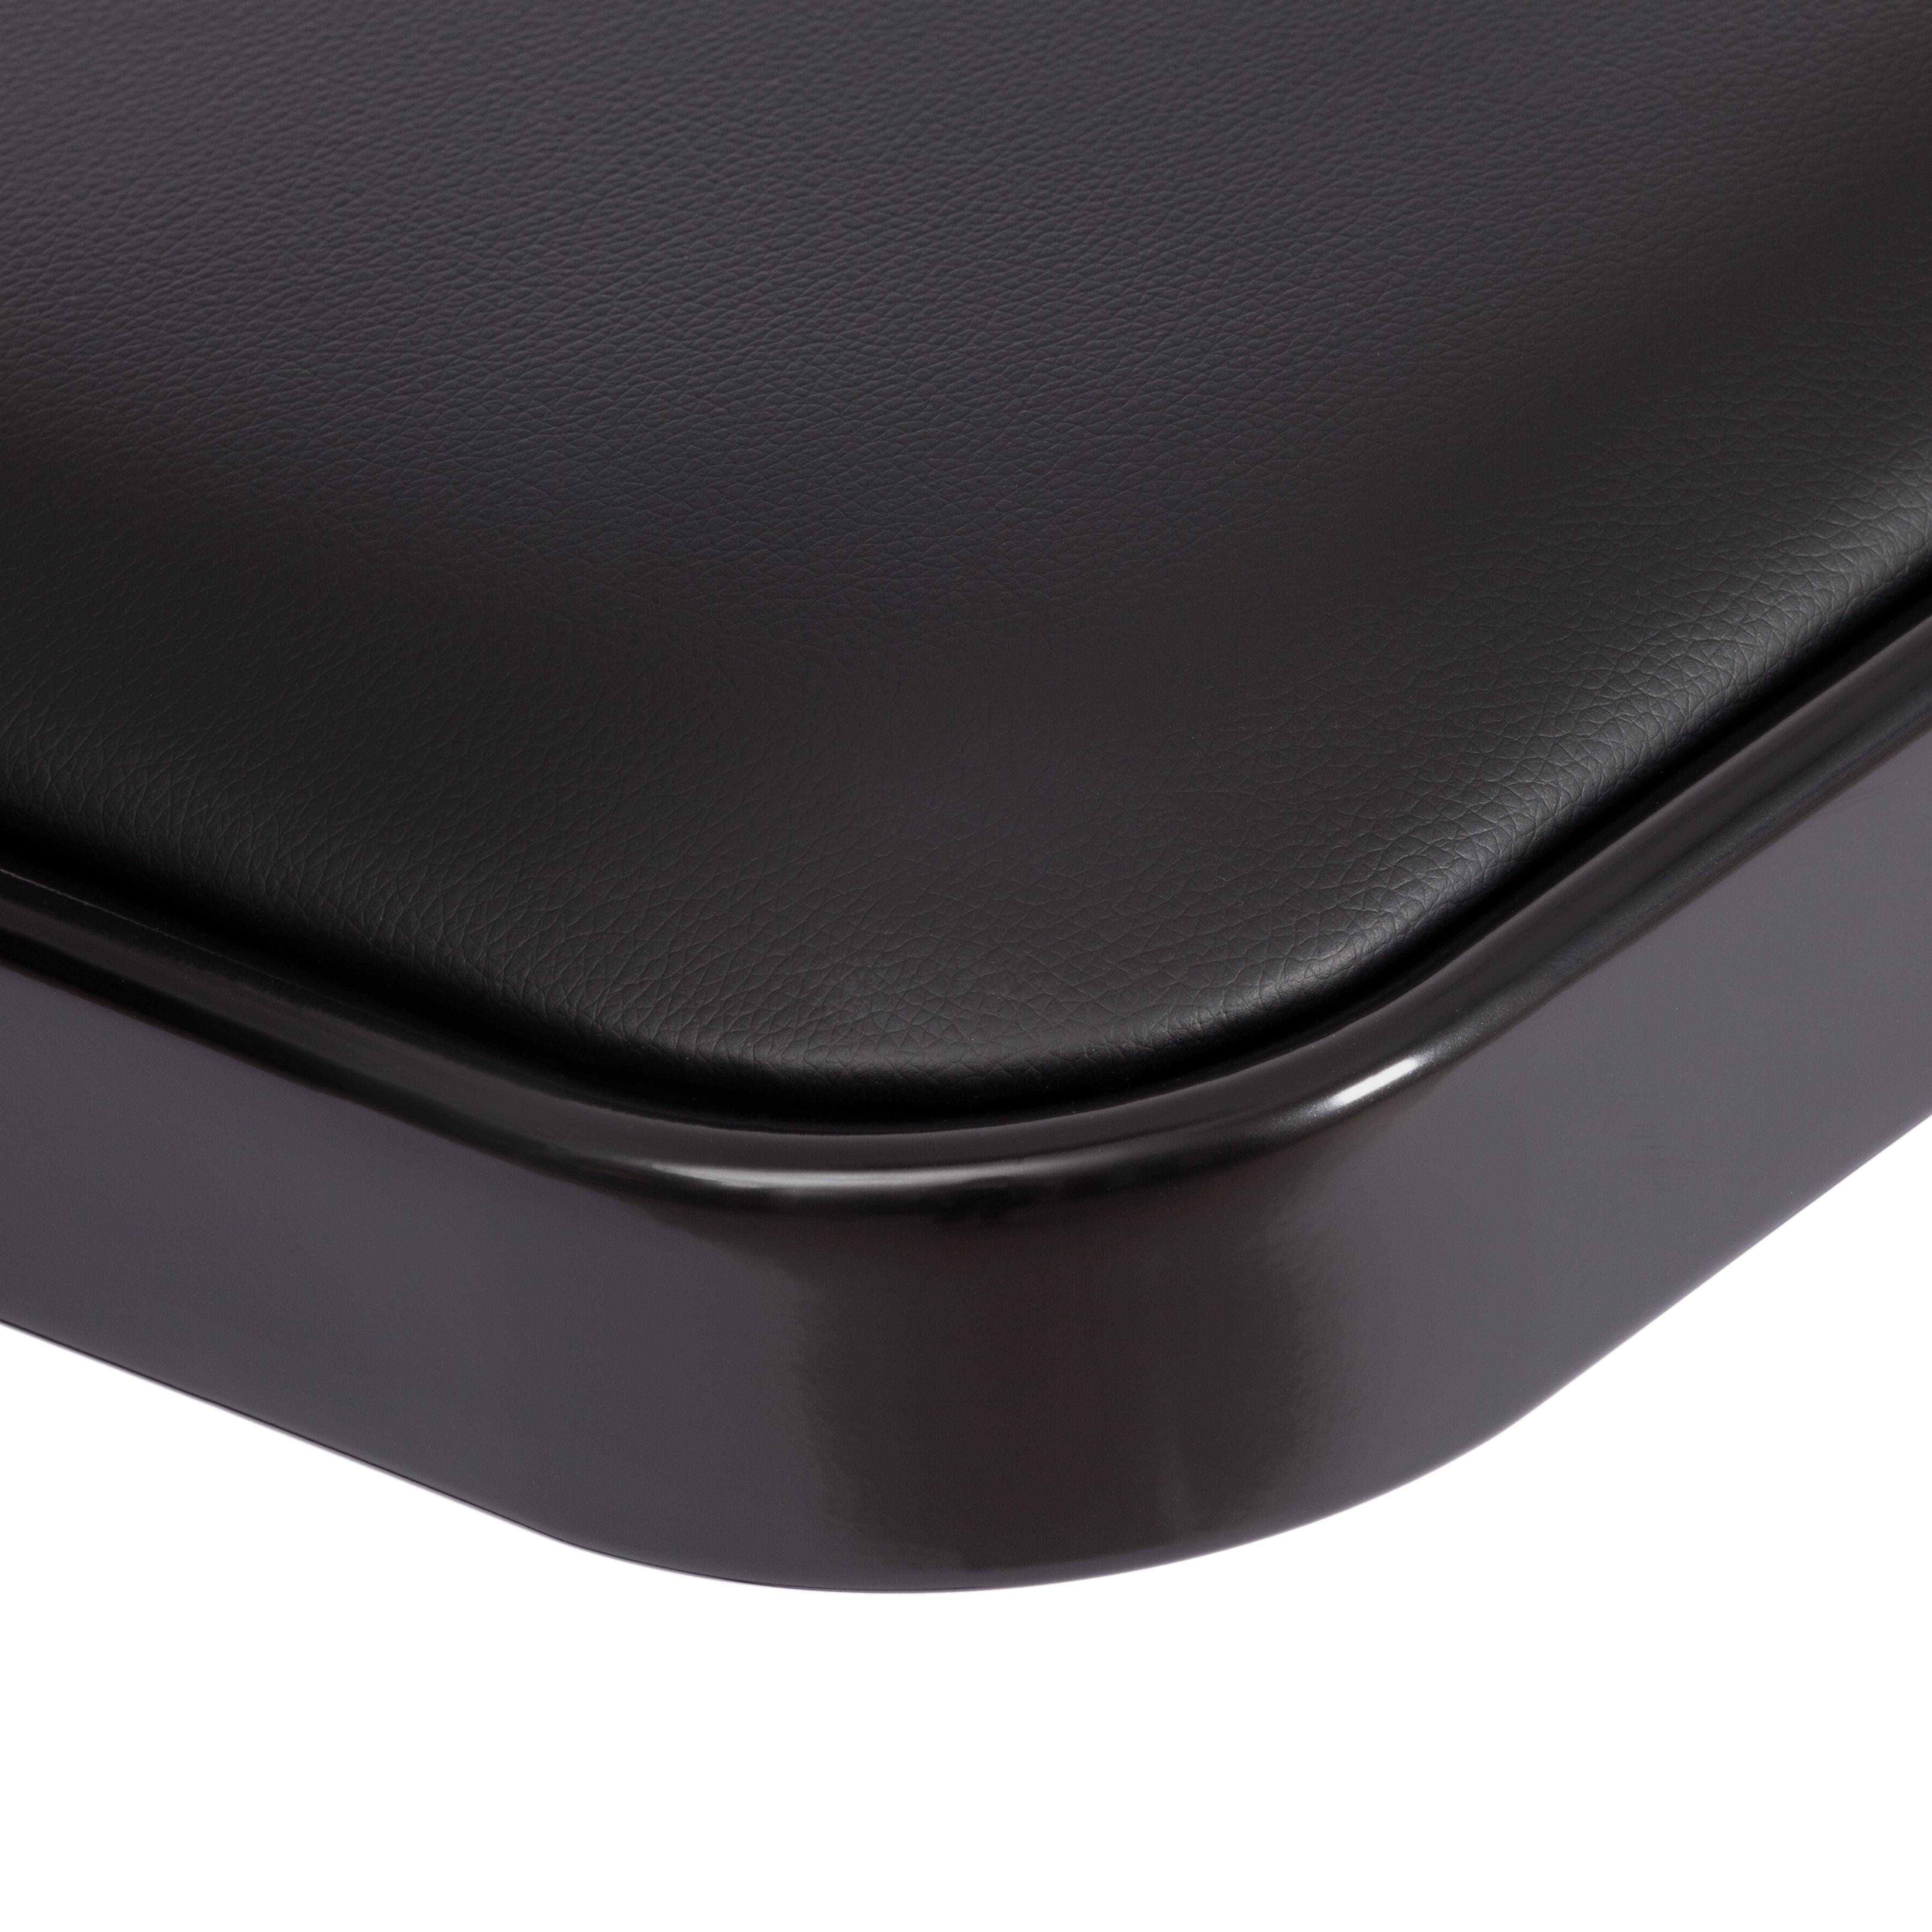 Стул складной FOLDER (mod. 3022G) каркас: металл, сиденье/спинка: экокожа, 46.5 х 47.5 х 79 см, black (черный) / black (черный)